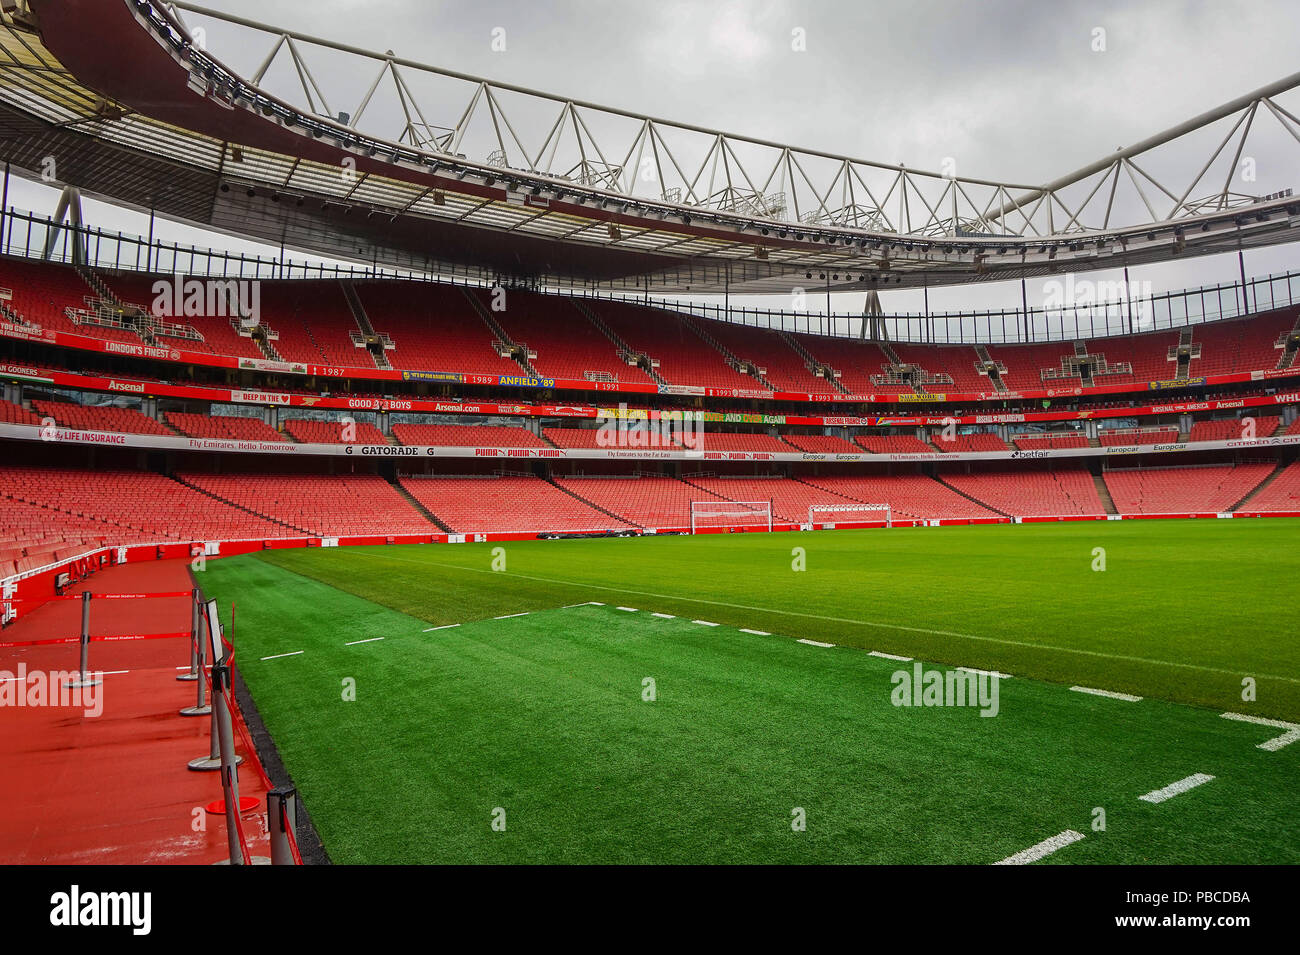 Arsenal Emirates Stadium, con una capacidad de más de 60.000 habitantes, es el tercer mayor estadio de fútbol de Inglaterra después de Wembley y el estadio Old Trafford. Foto de stock